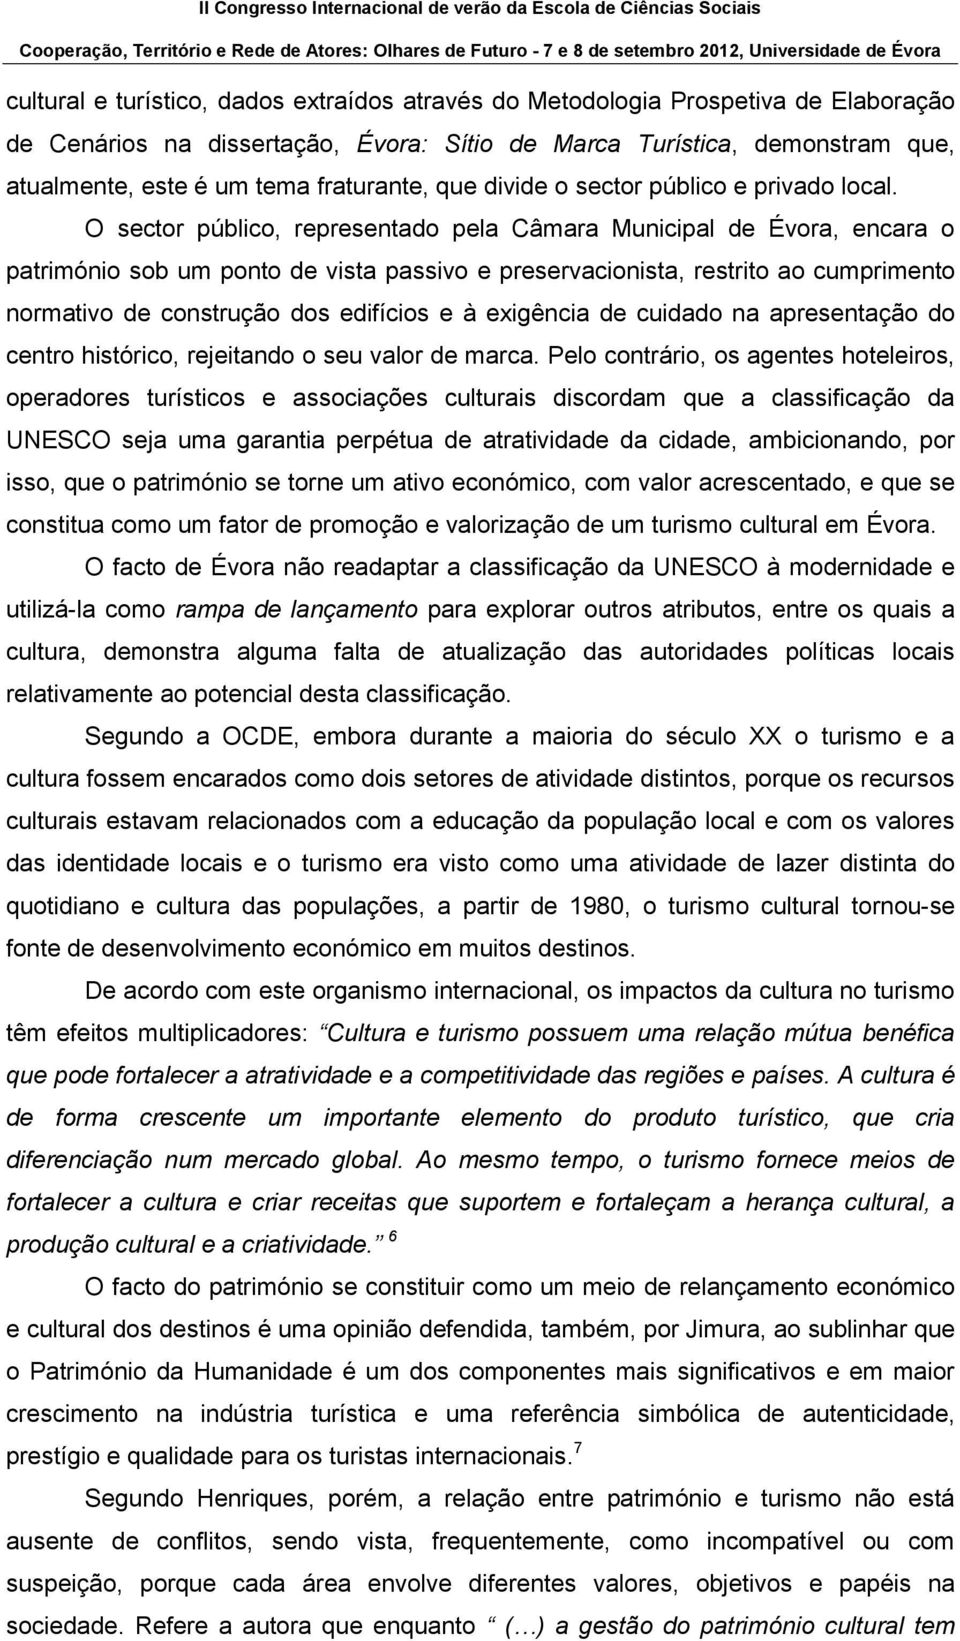 O sector público, representado pela Câmara Municipal de Évora, encara o património sob um ponto de vista passivo e preservacionista, restrito ao cumprimento normativo de construção dos edifícios e à